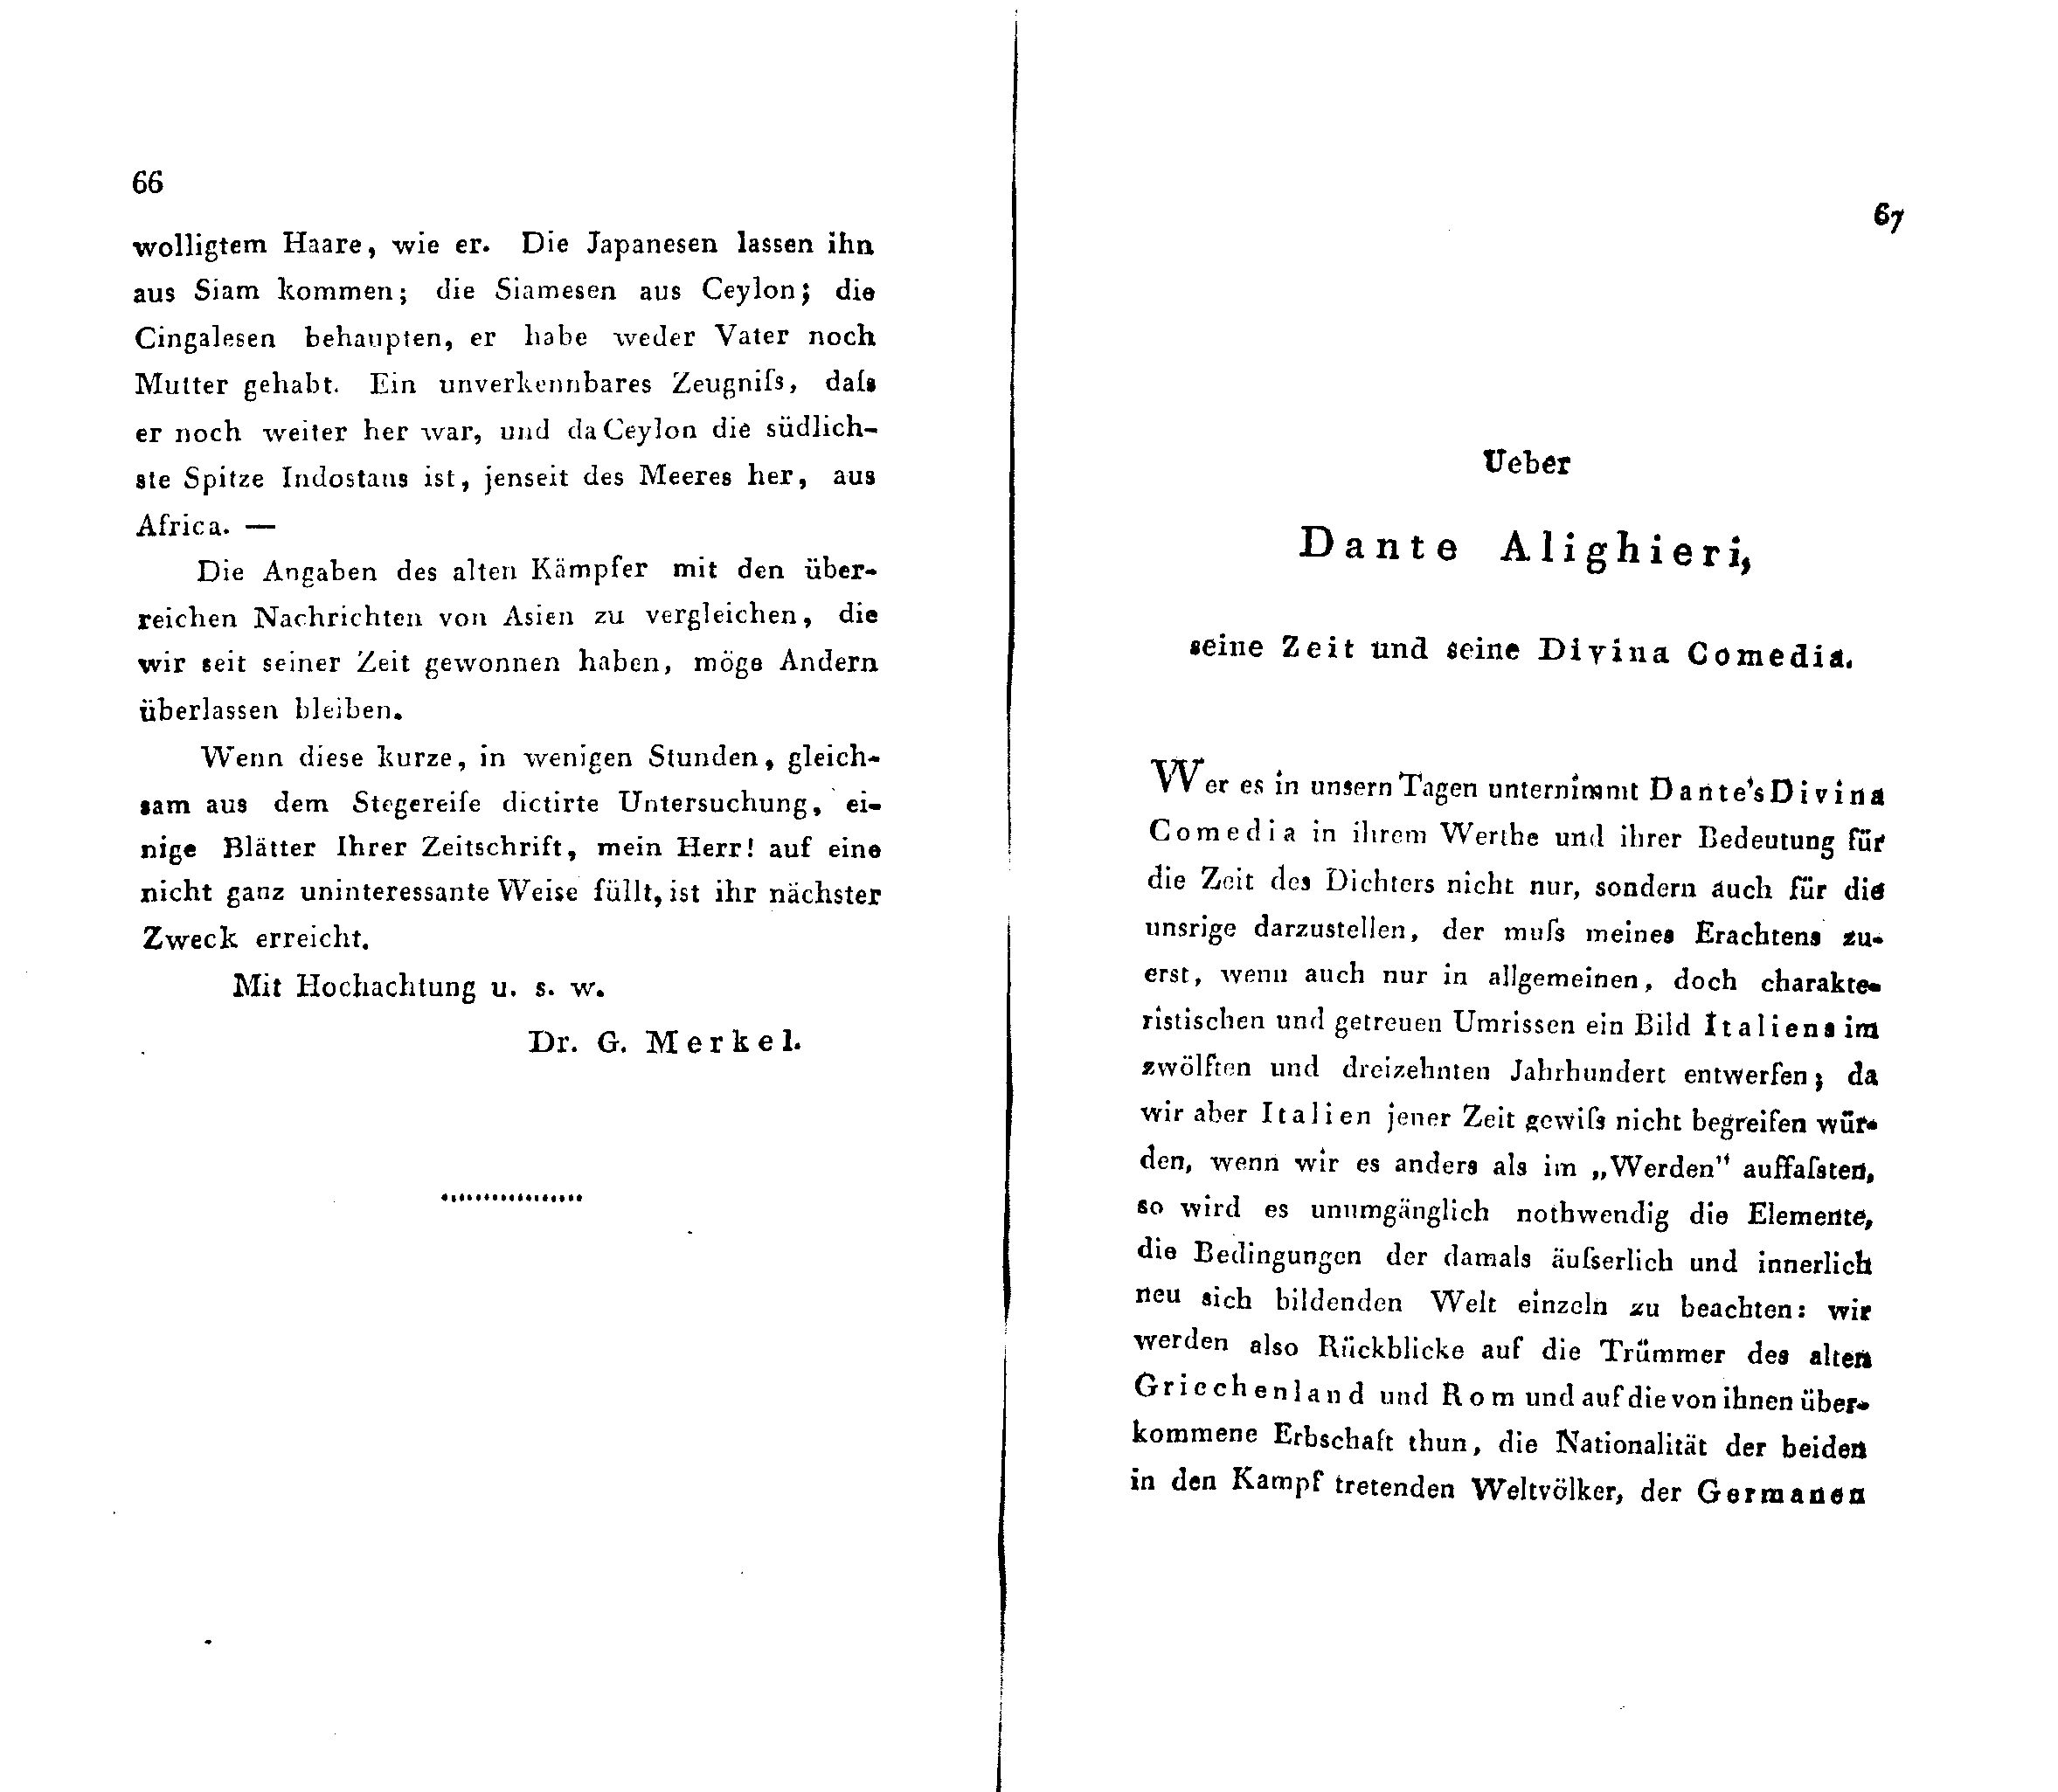 Ueber Dante Alighieri, seine Zeit und seine Divina Comedia [1] (1824) | 1. (66-67) Põhitekst